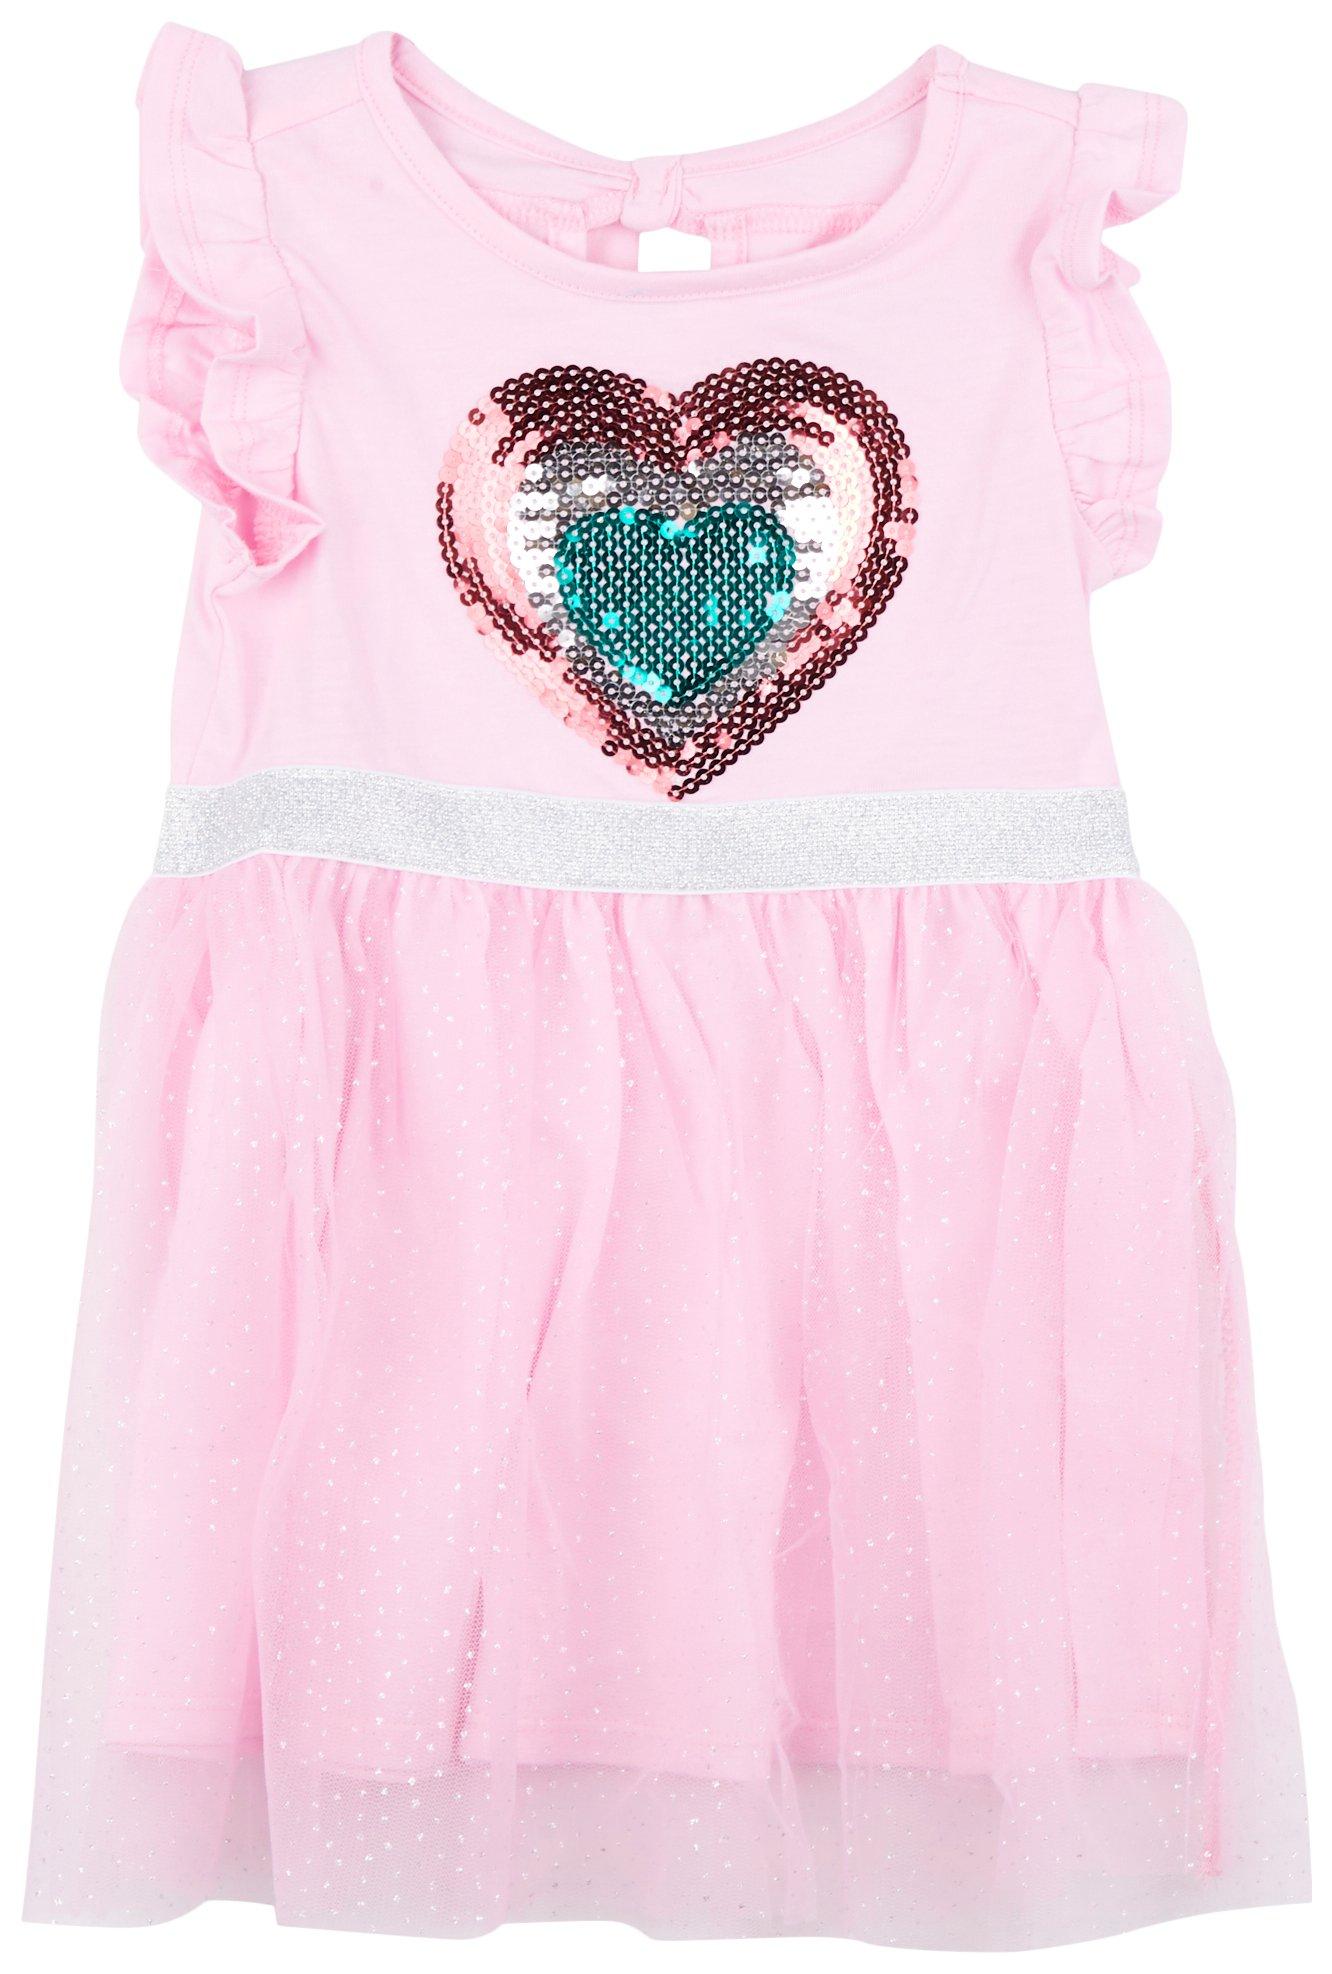 Toddler Girls Heart Sequin Flutter Sleeve Dress